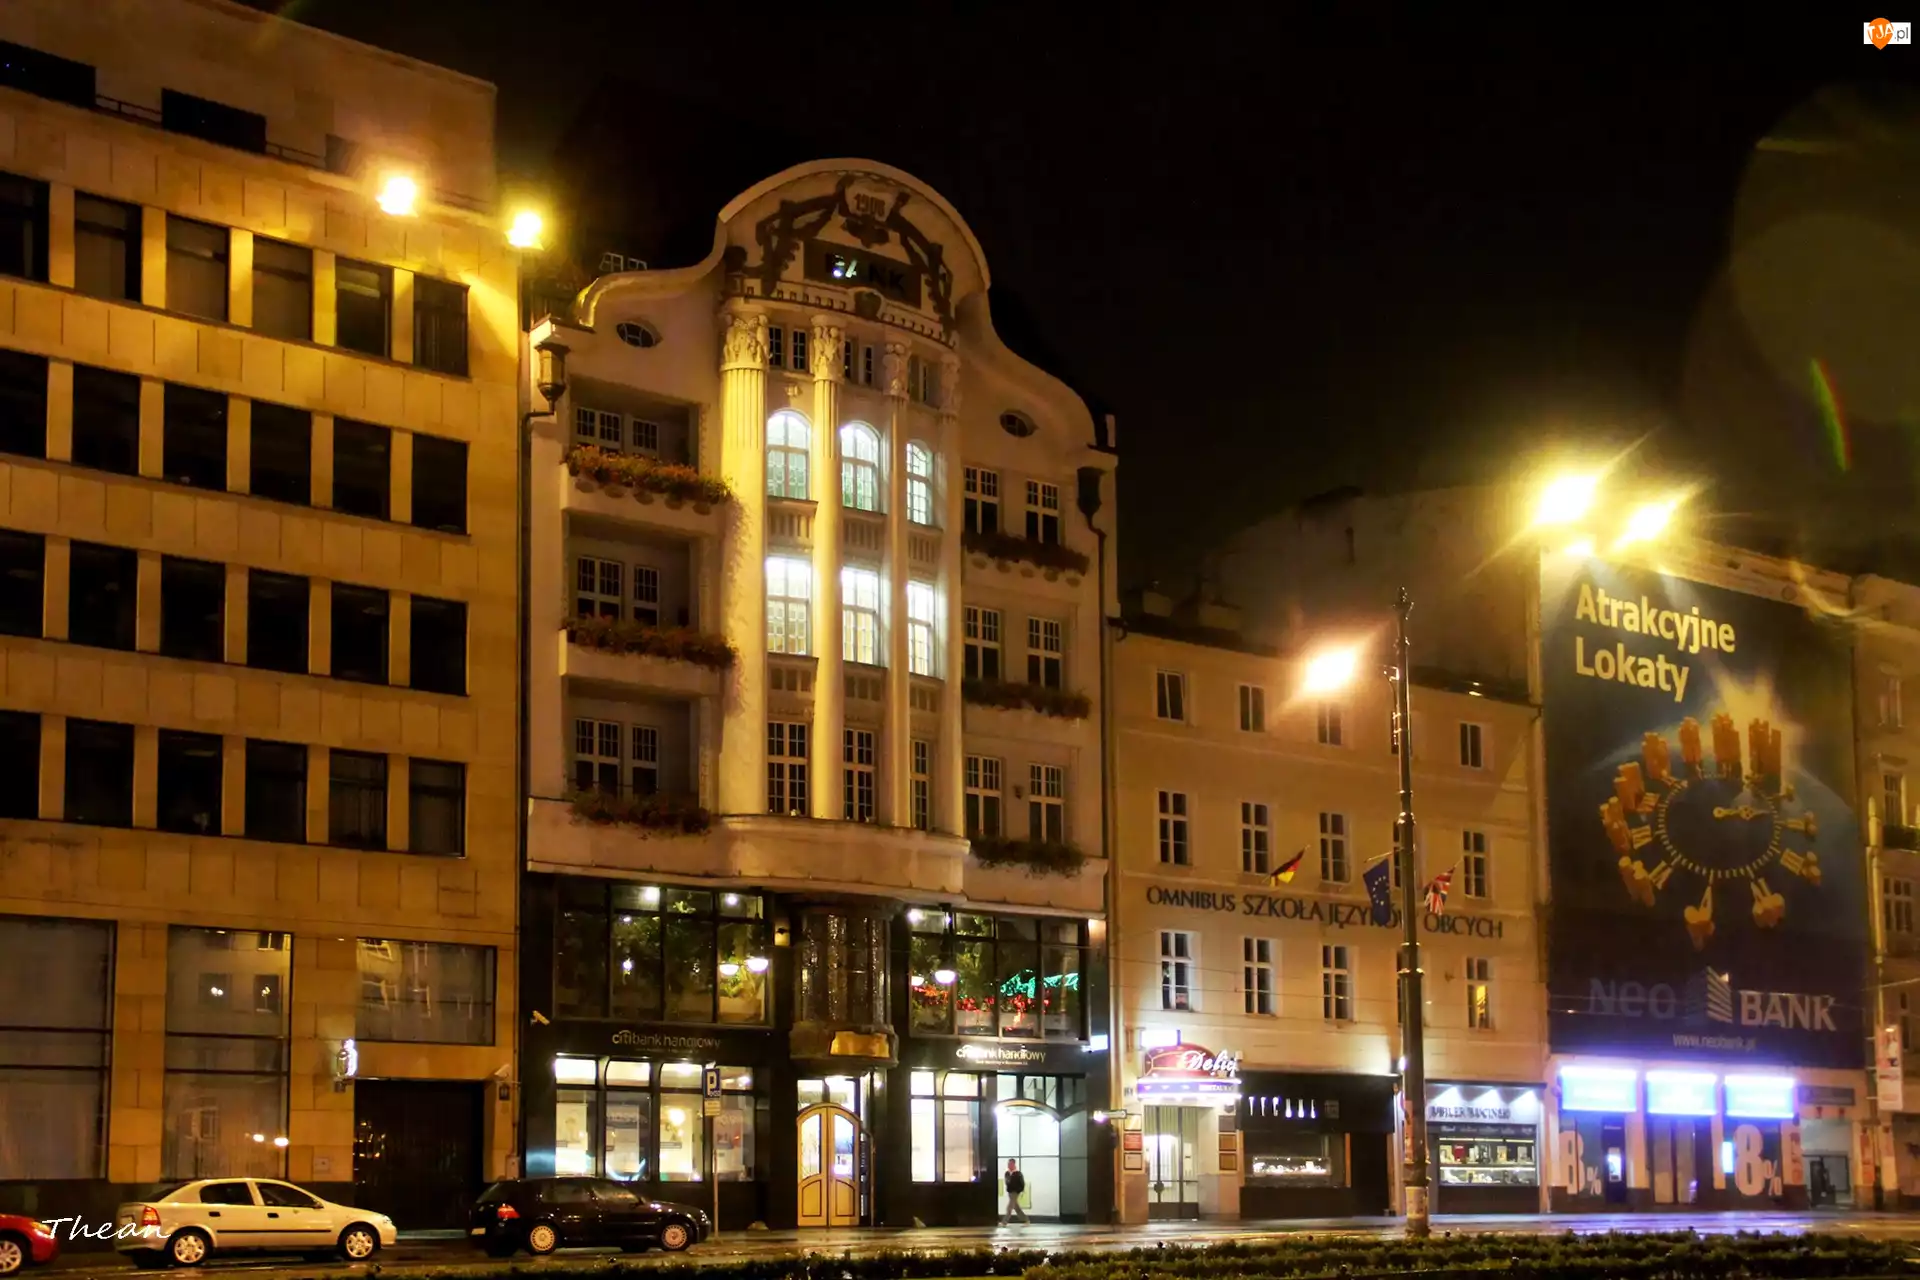 Centrum, Ulica, Poznań, Nocą, Budynki